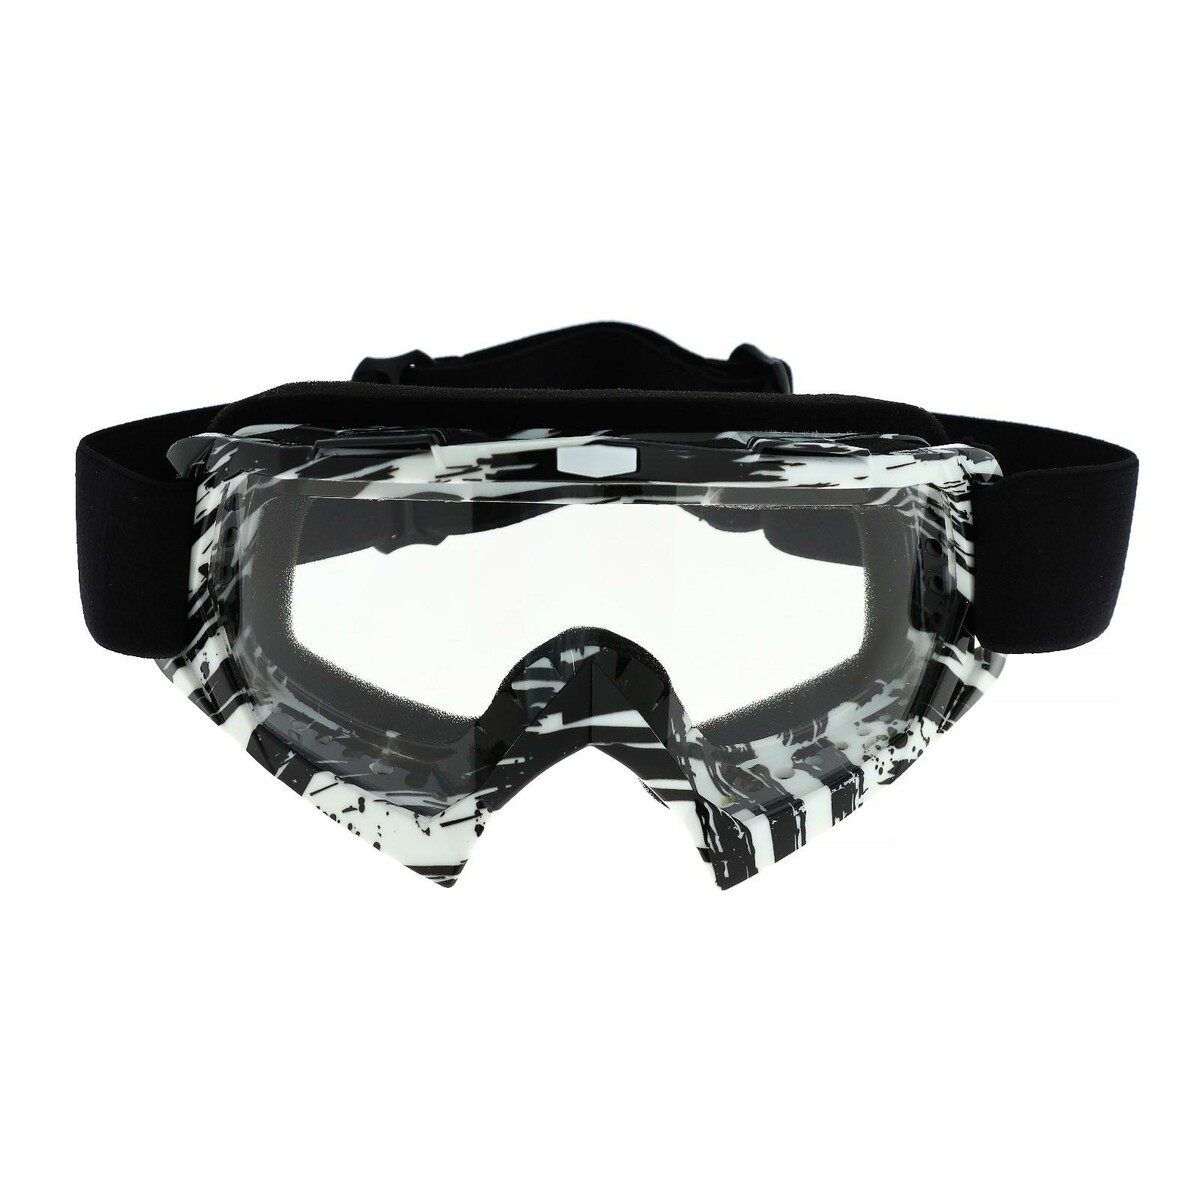 Очки-маска для езды на мототехнике, стекло прозрачное, цвет белый-черный, ом-20 очки маска со съемной защитой носа стекло прозрачное черные